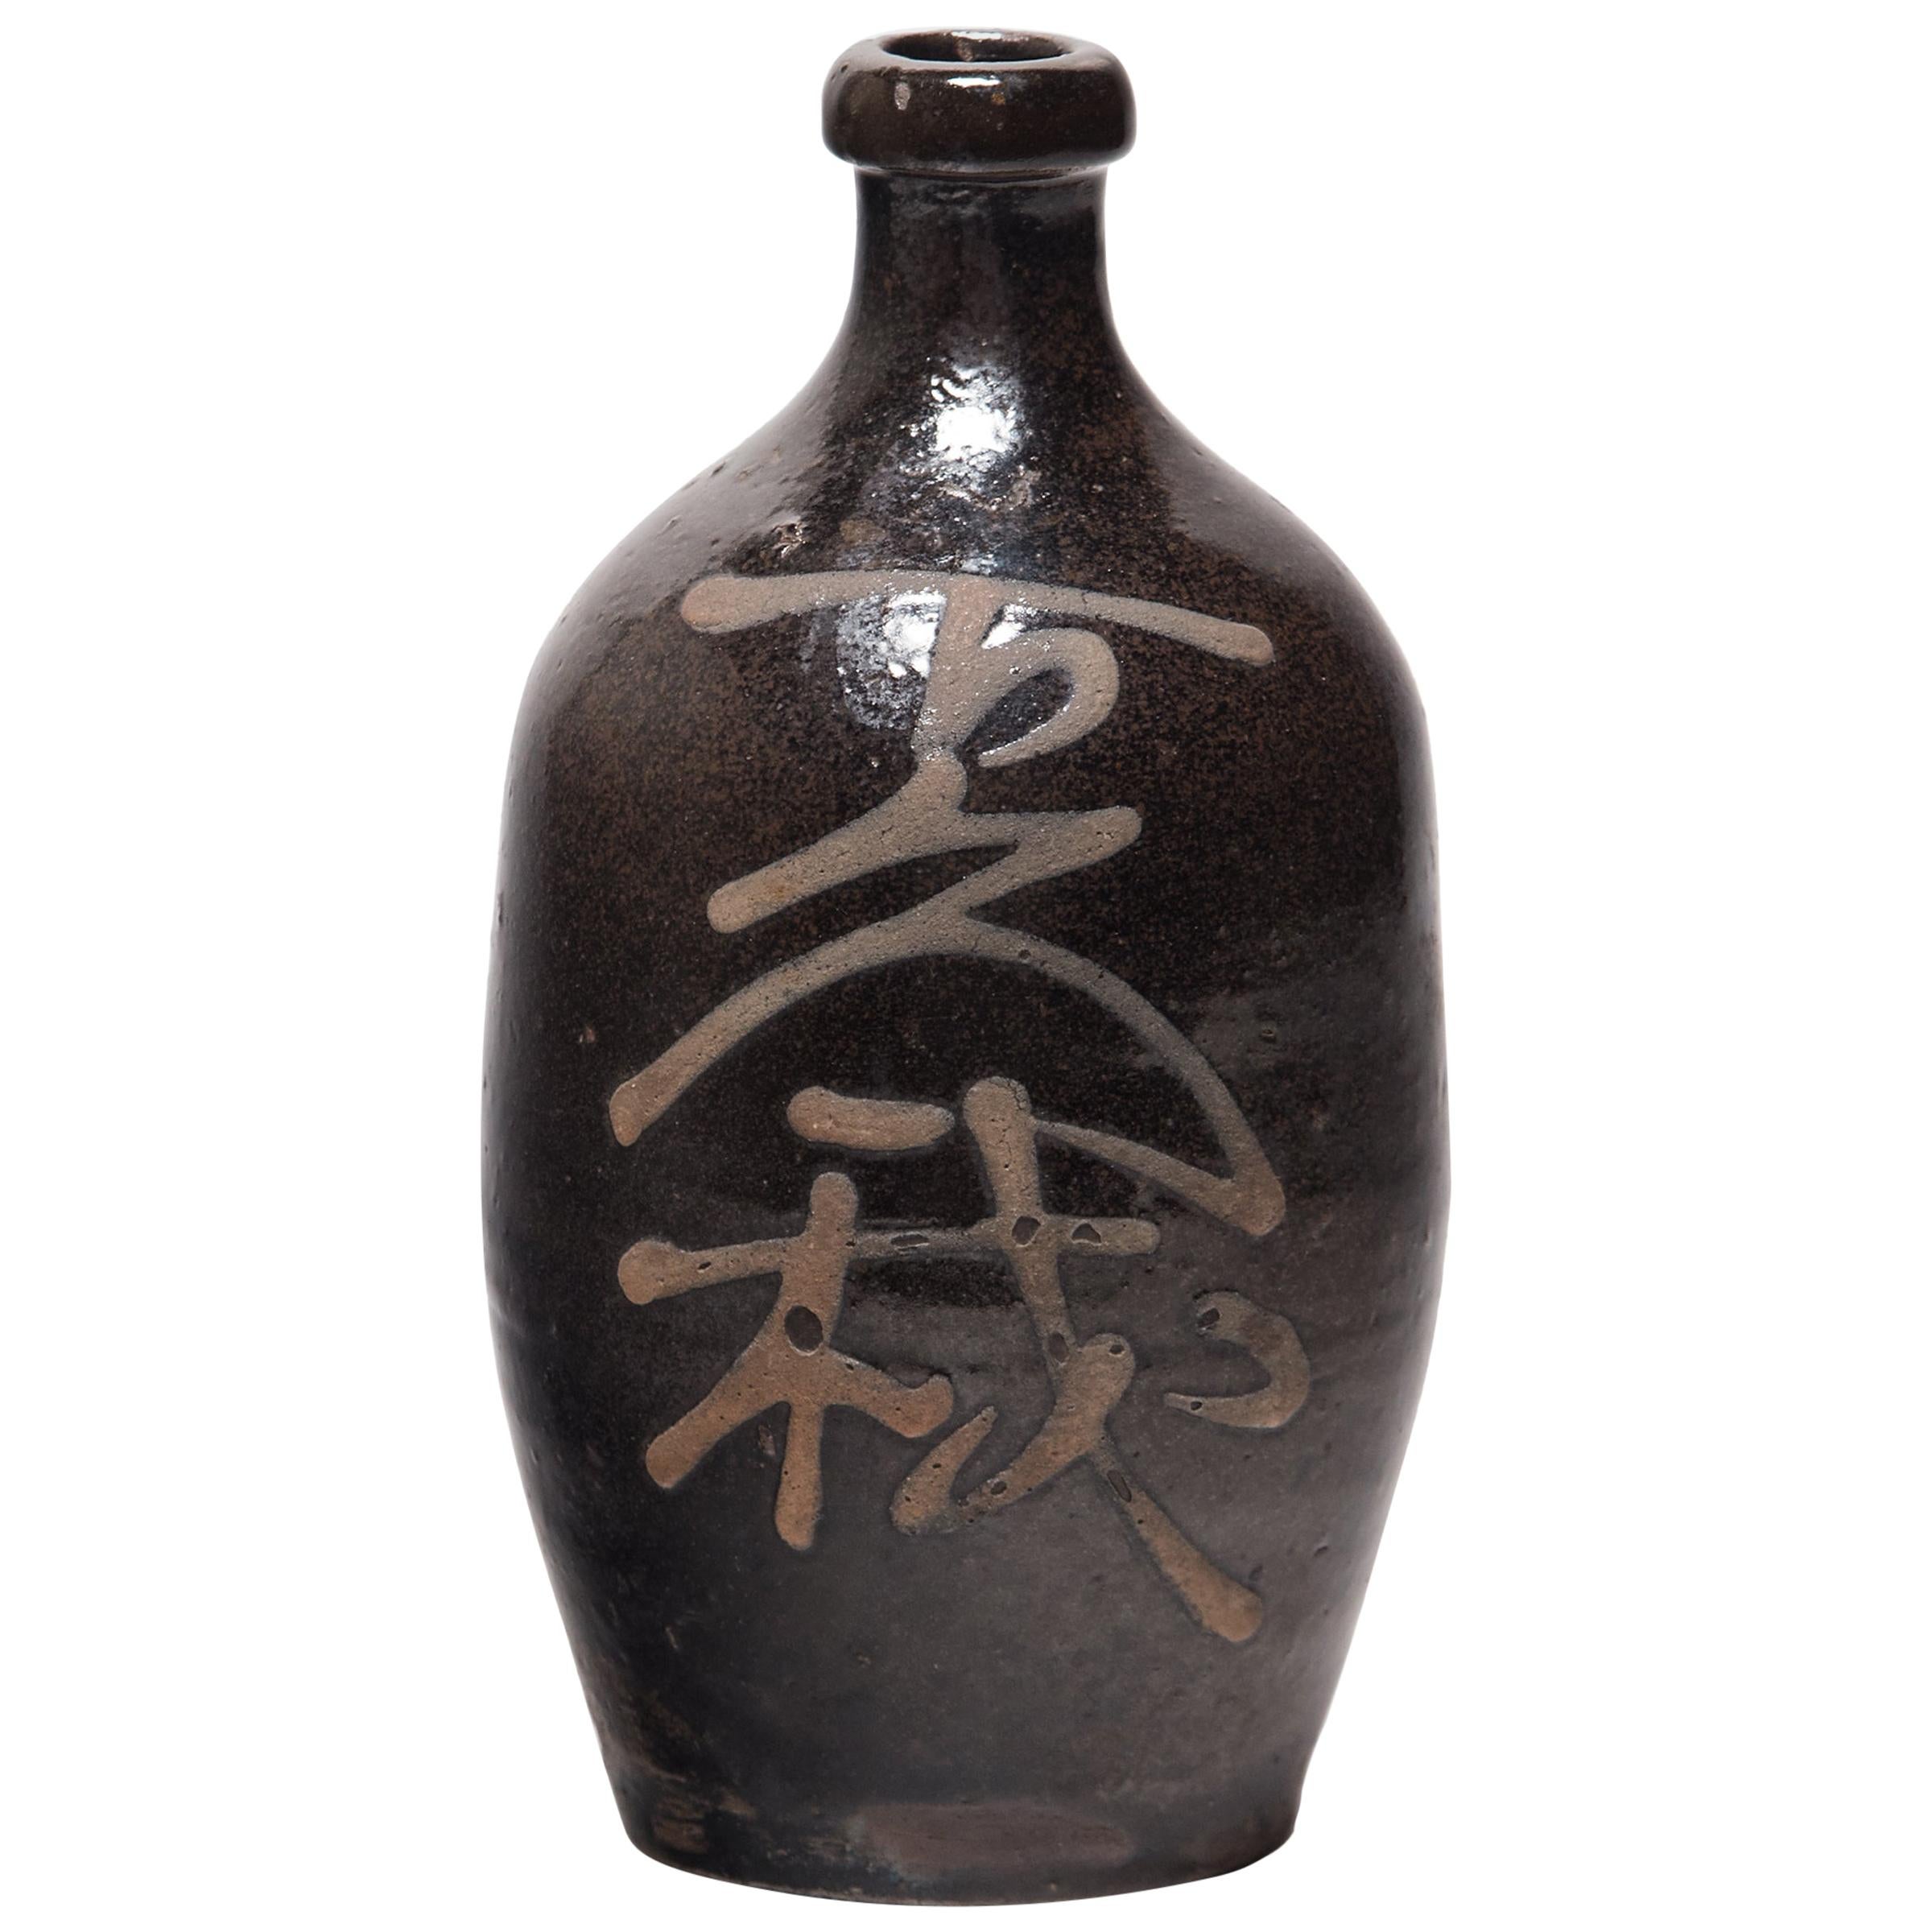 Japanese Sake Bottle, circa 1900